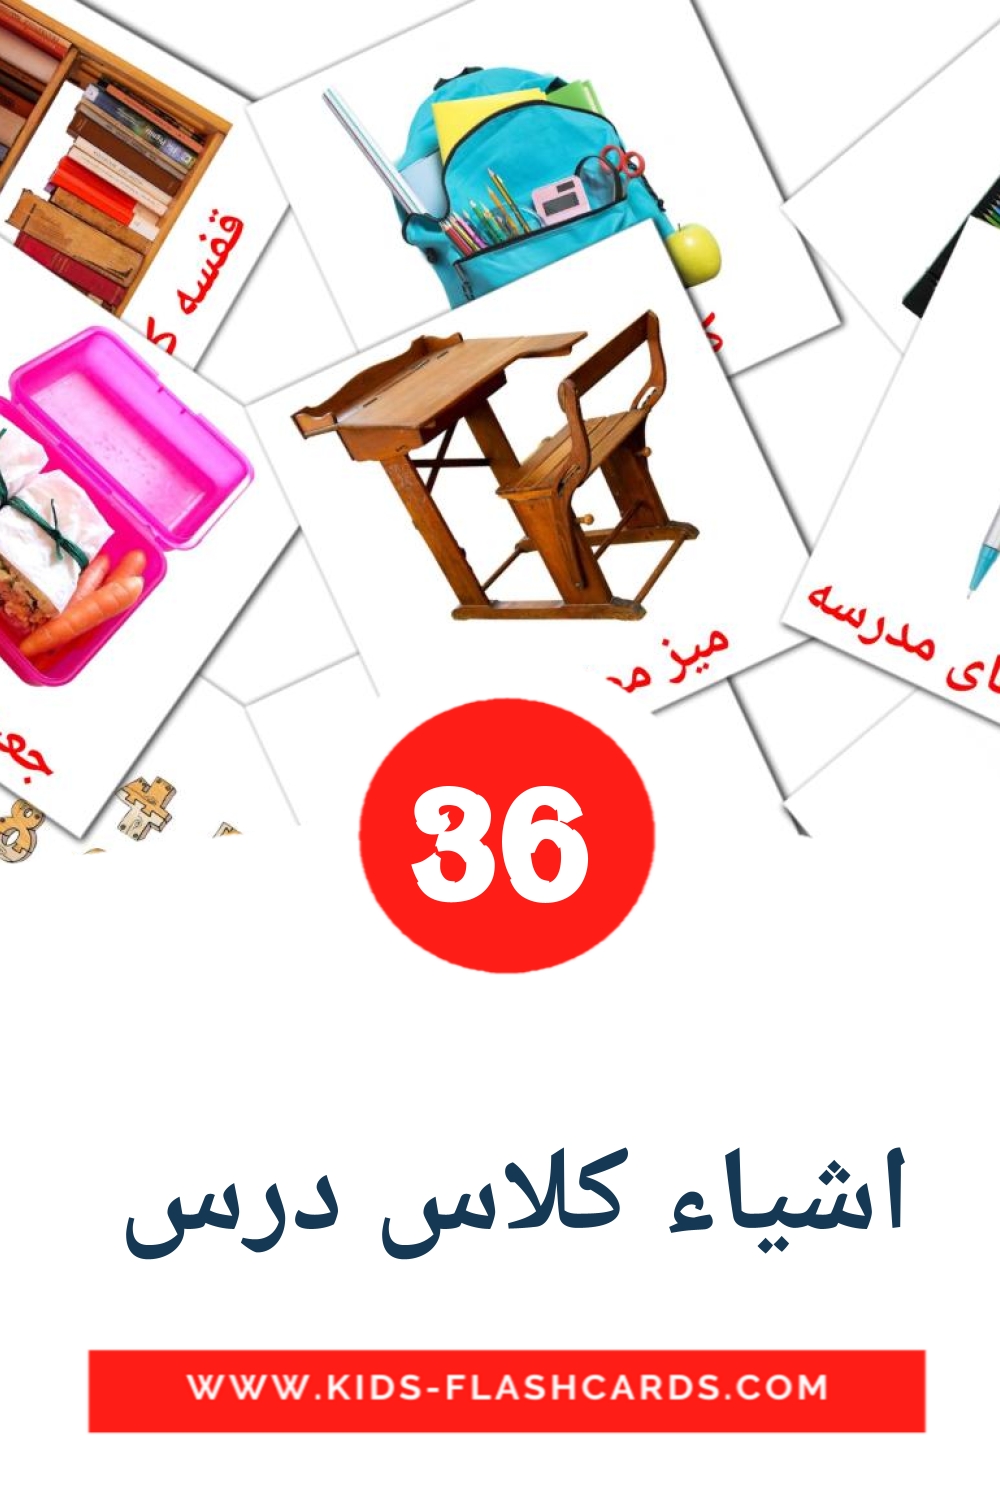 36 اشیاء کلاس درس  Bildkarten für den Kindergarten auf Persisch